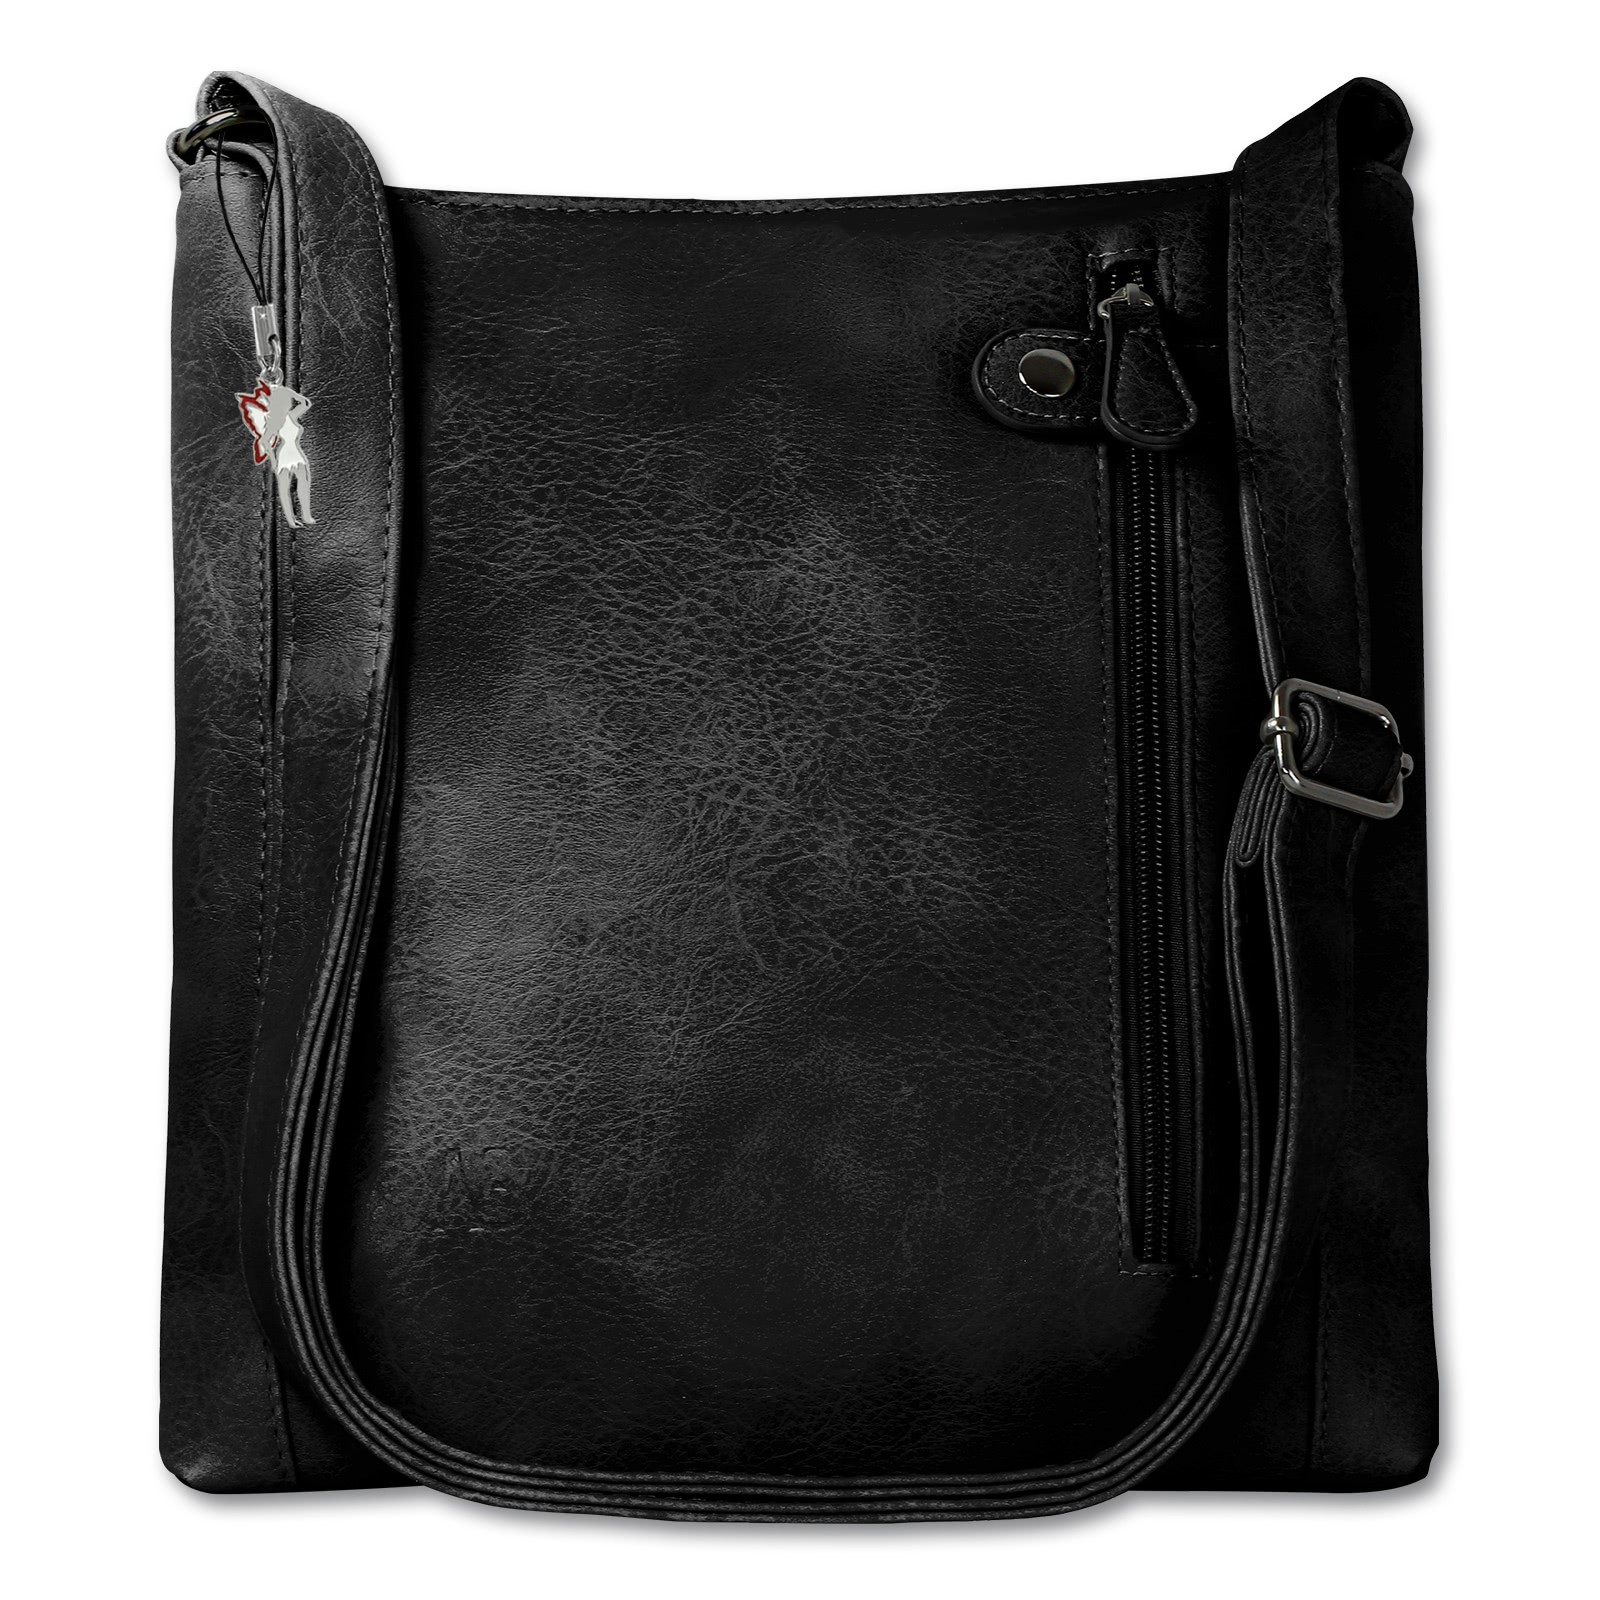 New Bags Handtasche PU schwarz Schultertasche OTD320S